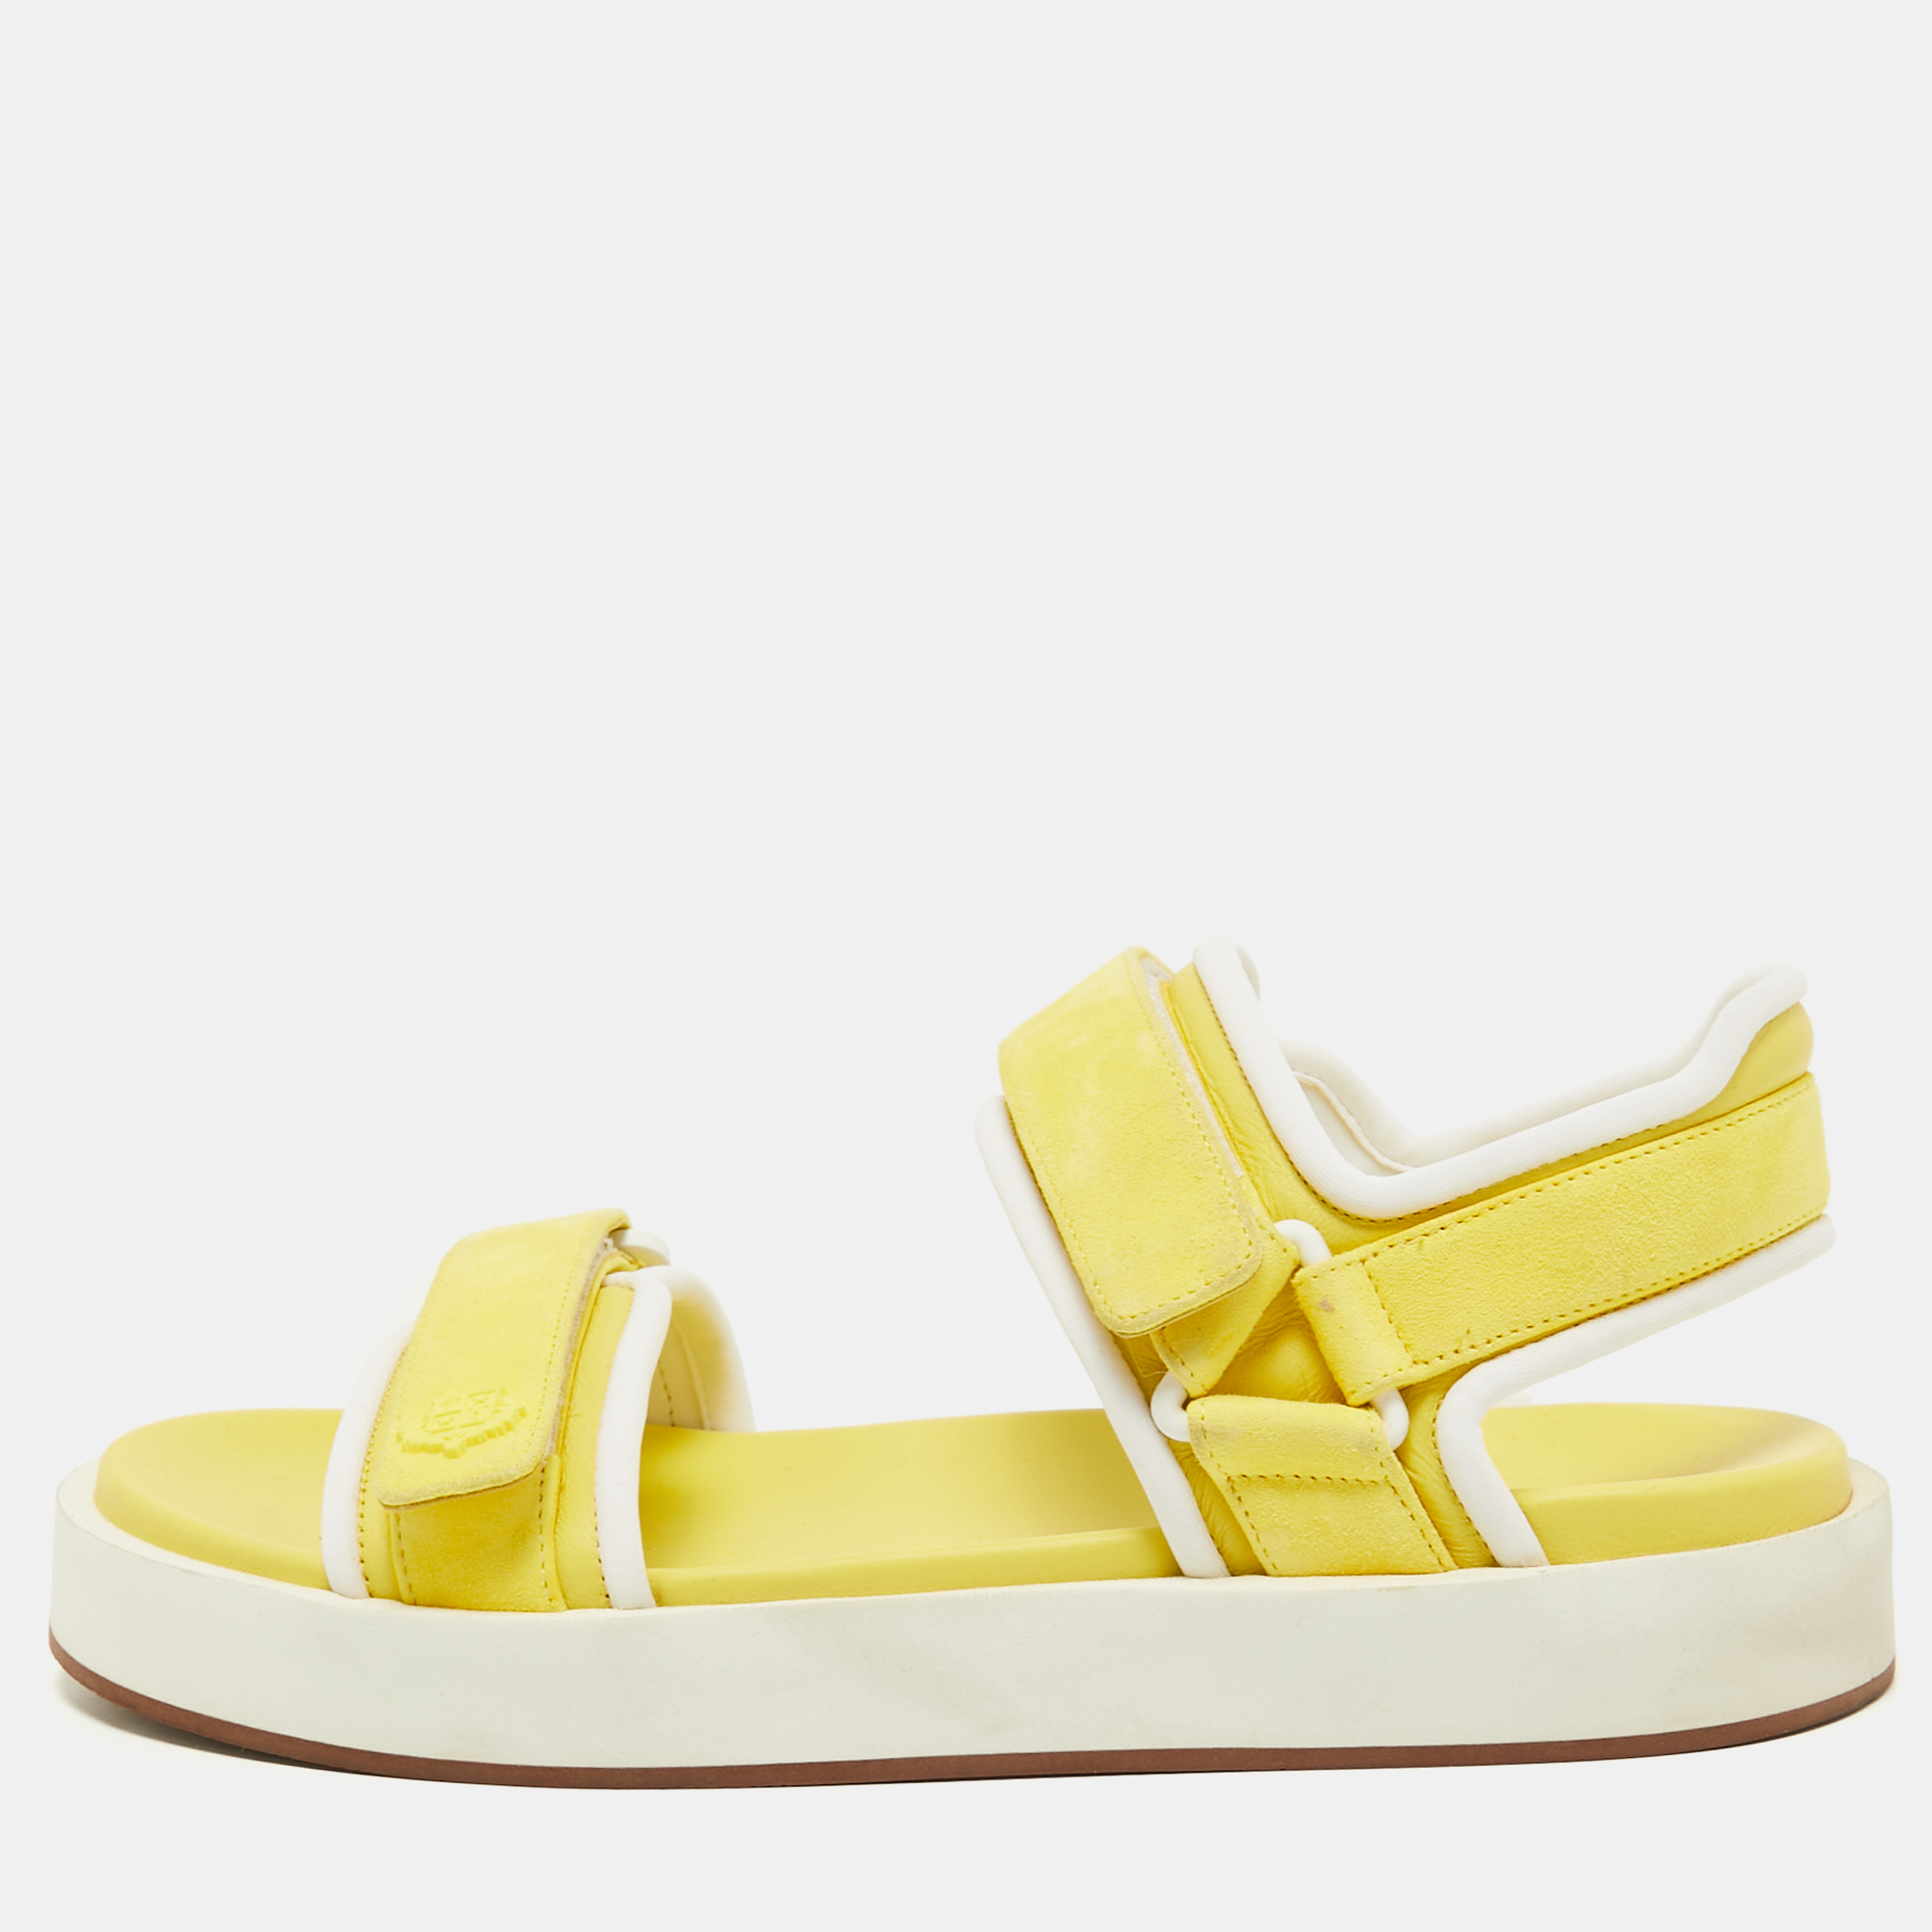 Pre-owned Loro Piana Yellow Leather Waikiki Flat Sandals Size 37